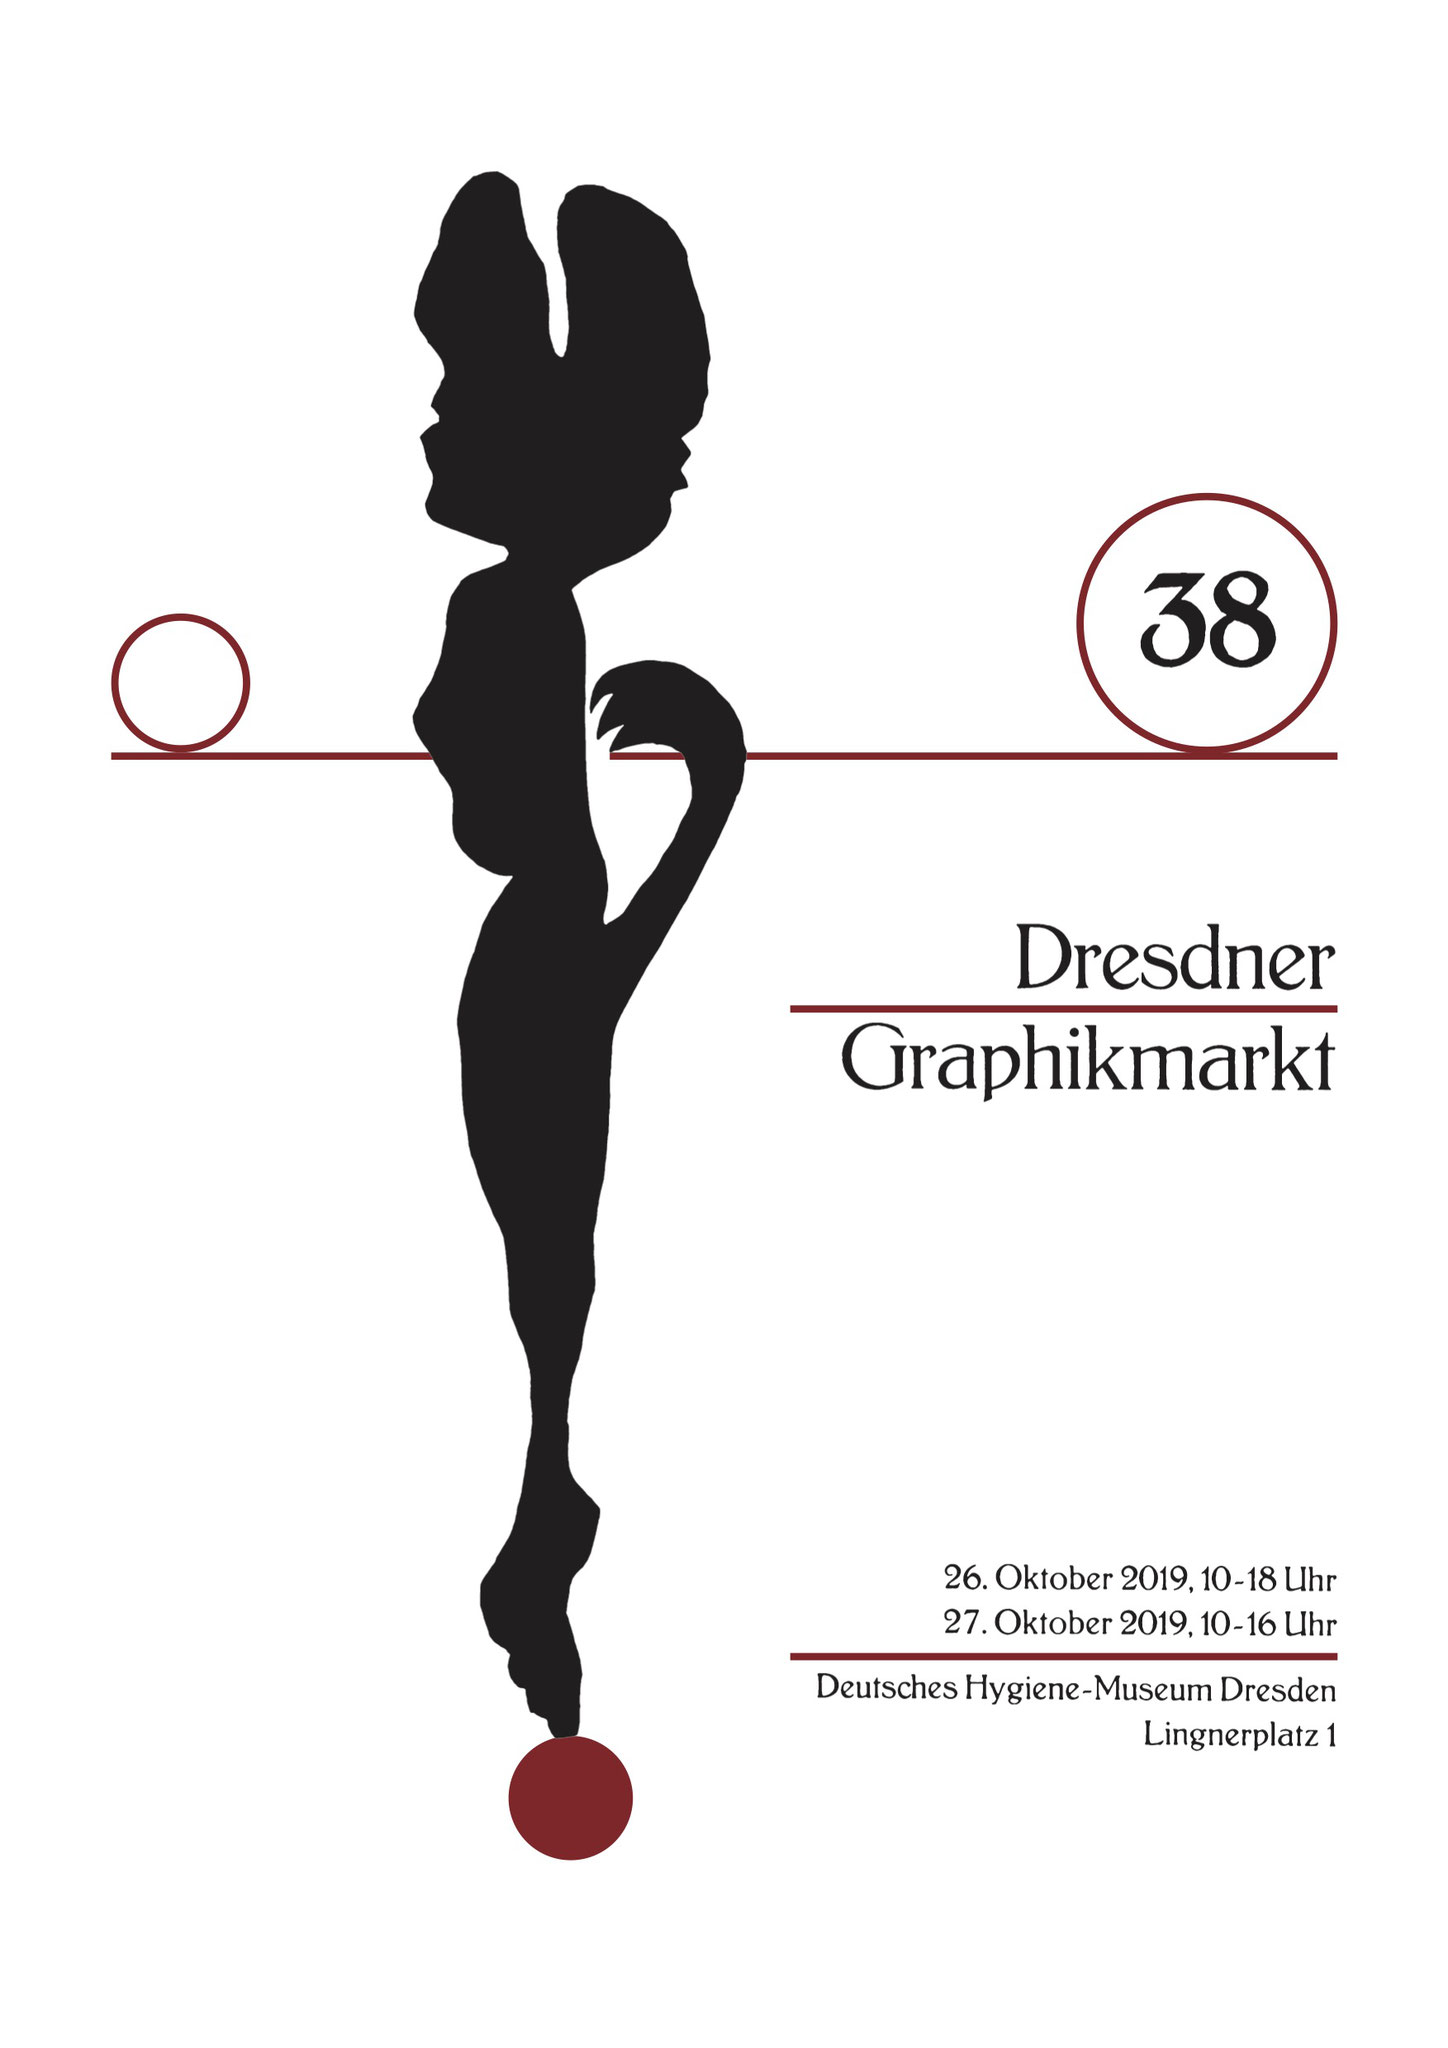  Plakat 38. Dresdner Graphikmarkt 2019, Udo Haufe, Linolschnitt/Buchdruck